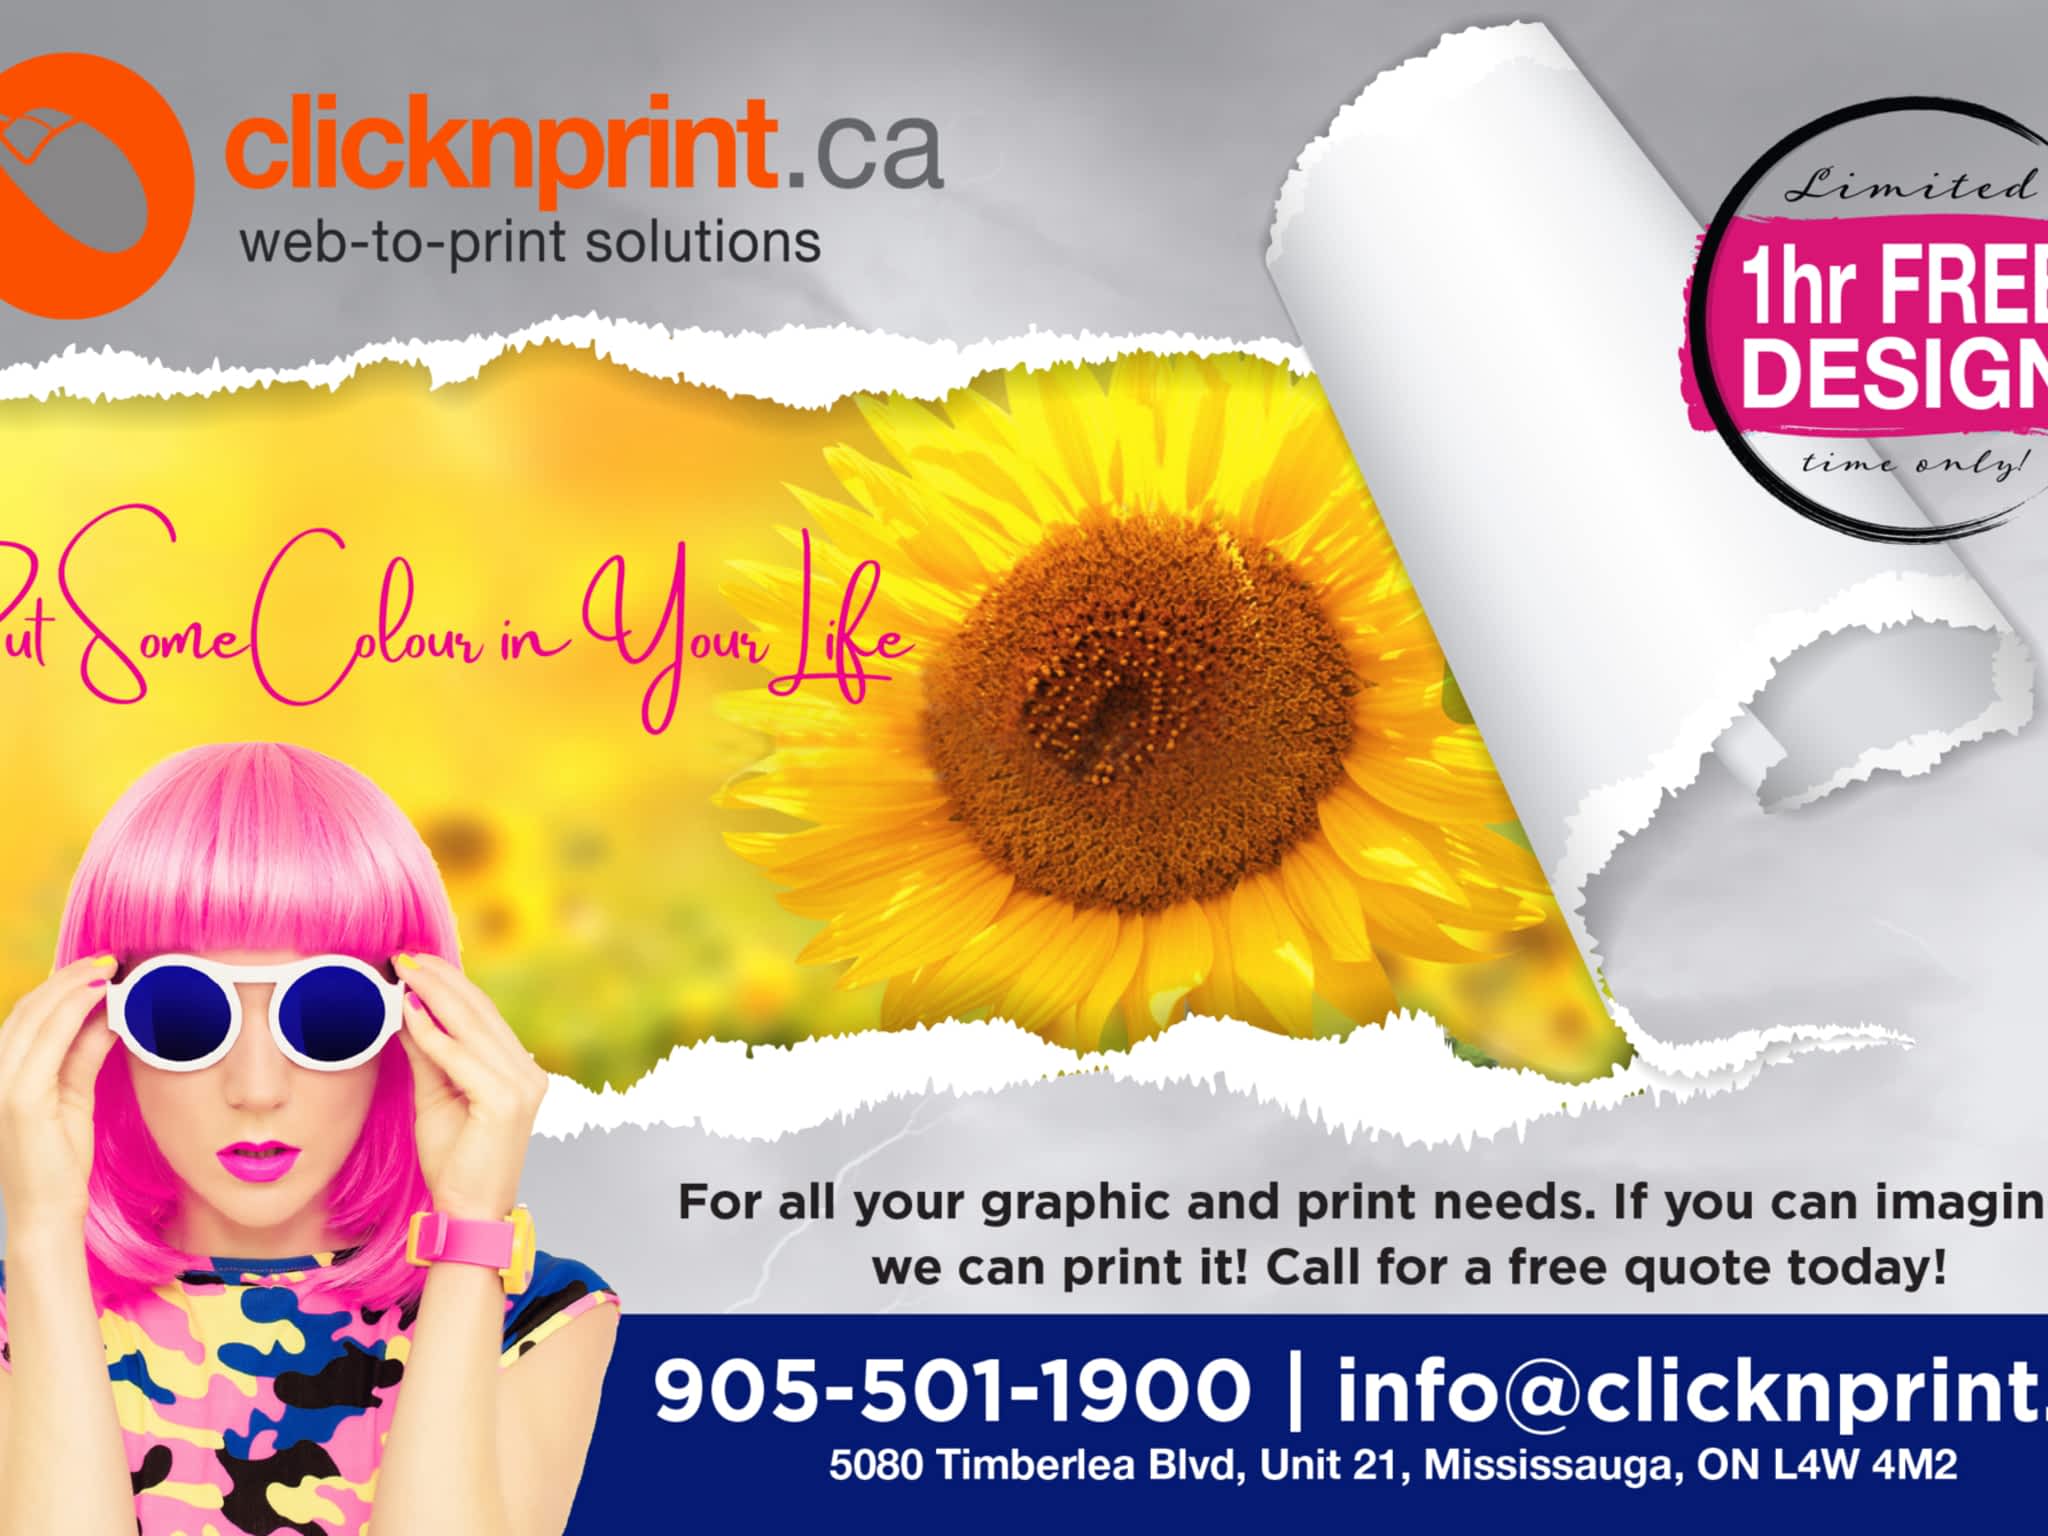 photo Clicknprint.ca